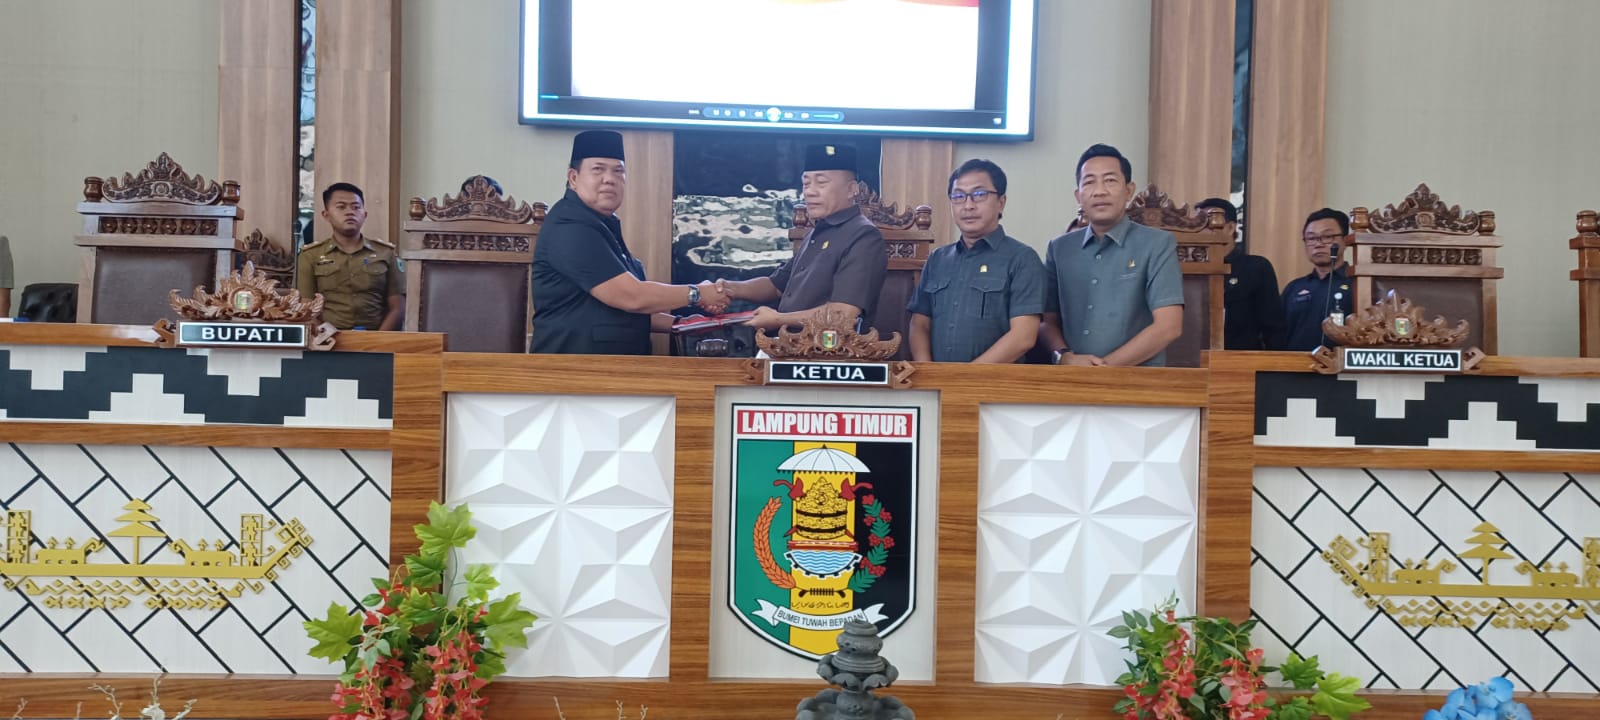 DPRD Lampung Timur Mulai Bahas 5 Raperda, Salah Satunya Kawasan Tanpa Rokok